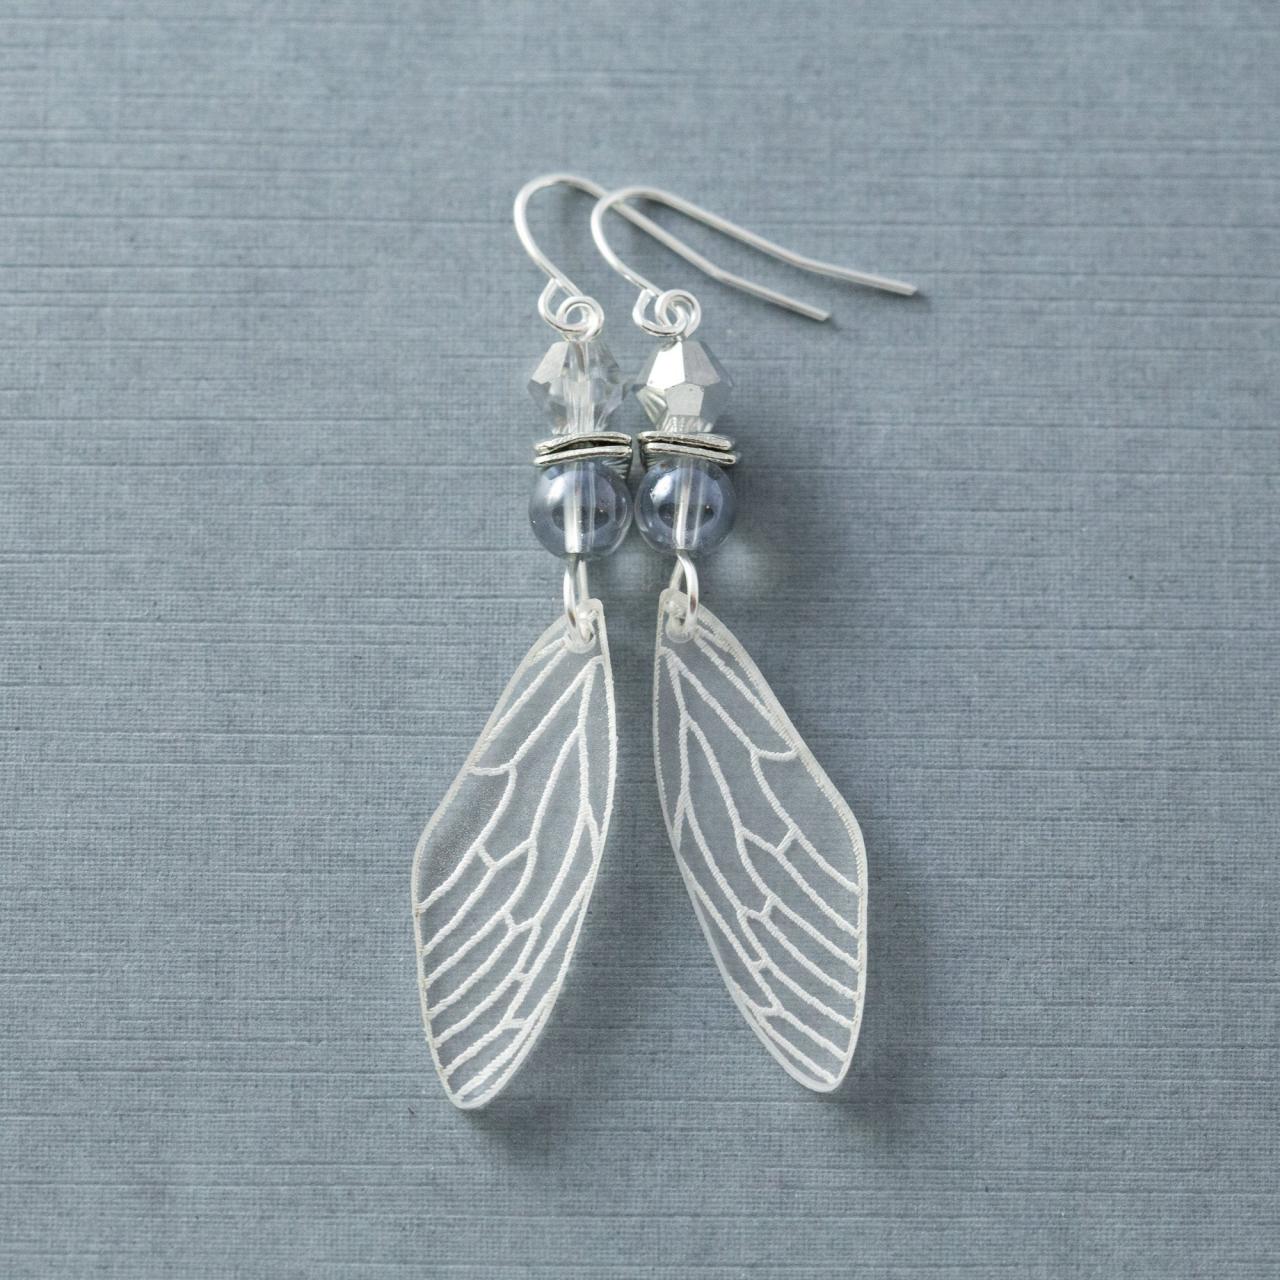 Fairy Wing Earrings, Cicada Wing Earrings, Cicada Earrings, Insect Wing Earrings, Acrylic Earrings, Nature Jewelry